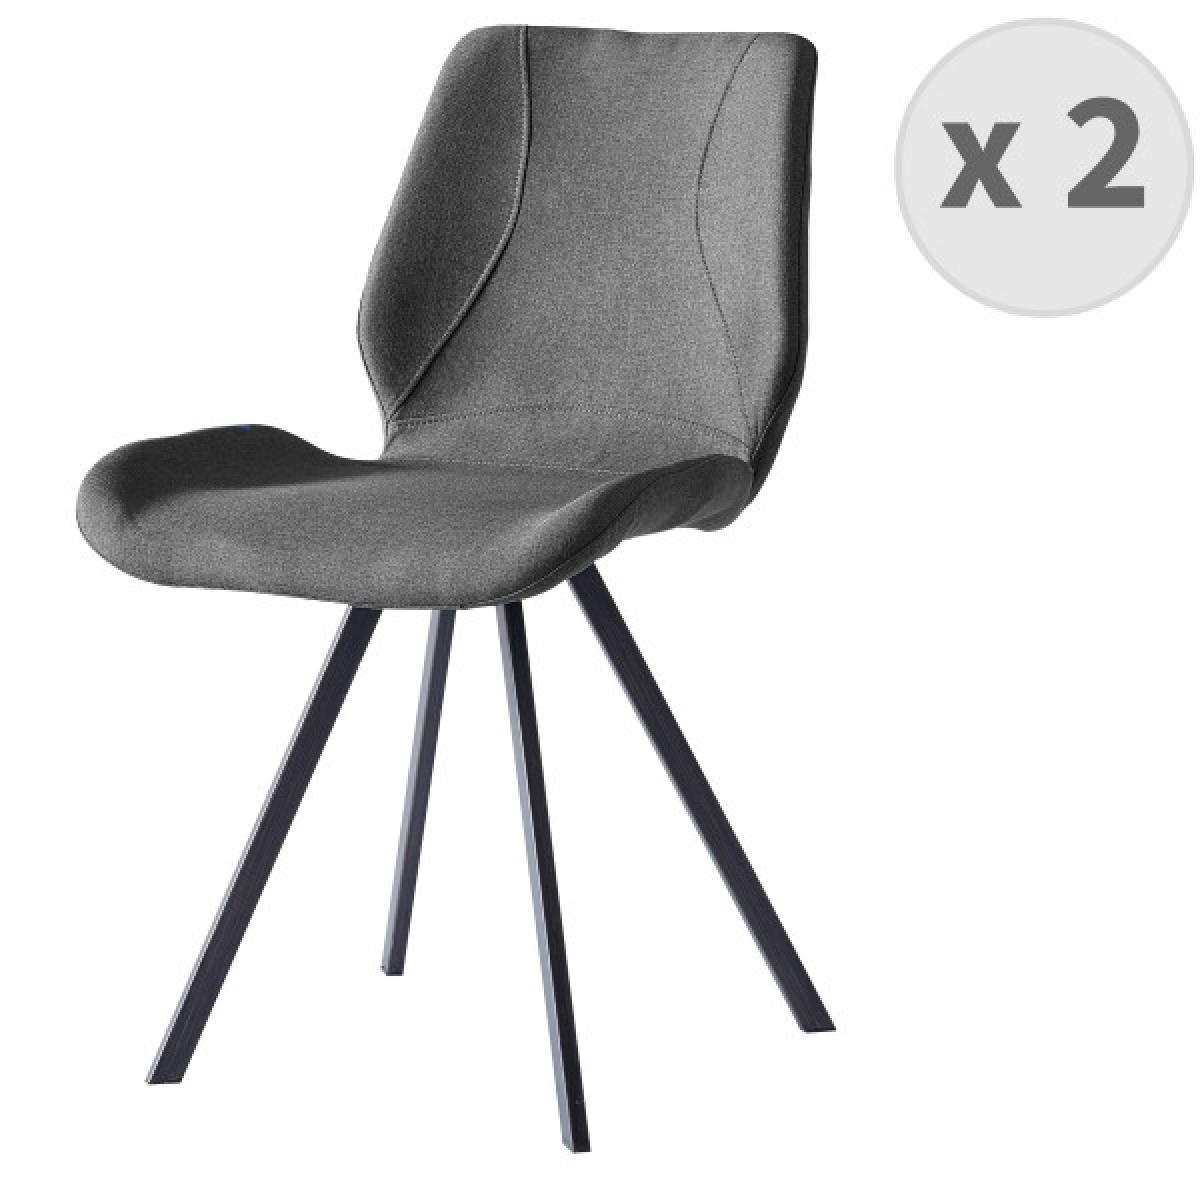 Moloo - HALIFAX-Chaise indus tissu gris pieds noir brossé (x2) - Chaises